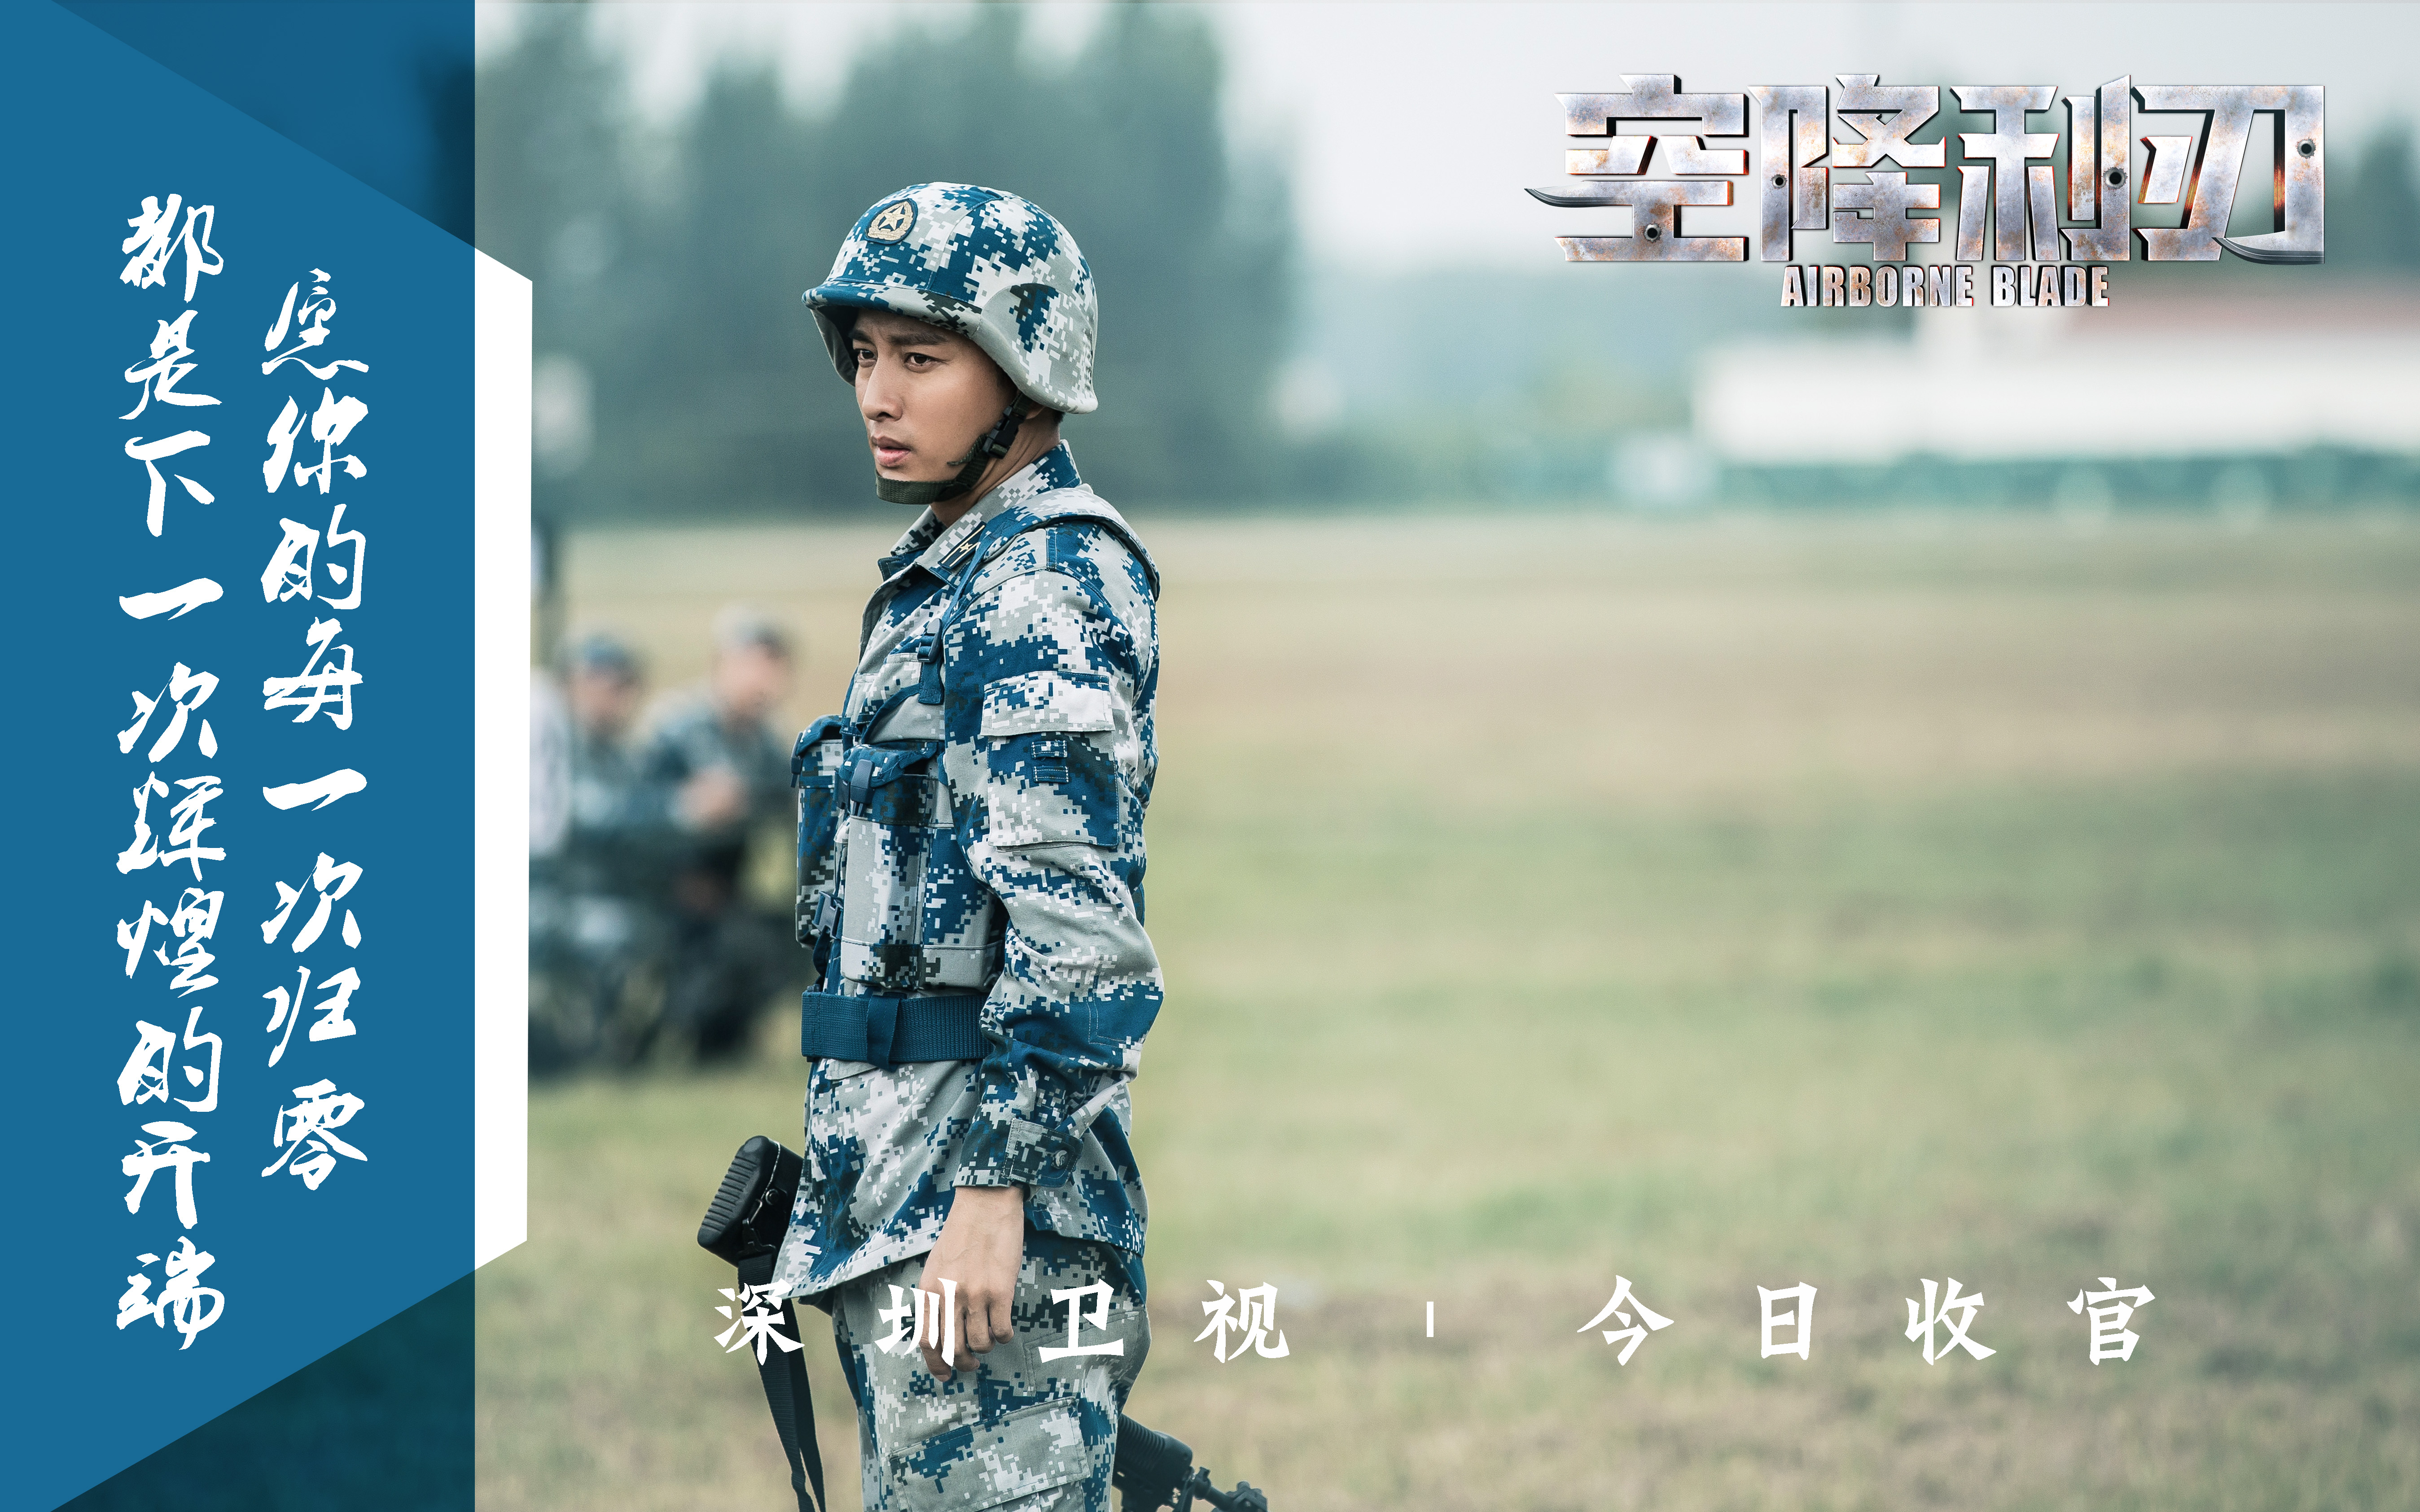 深圳卫视军事图片